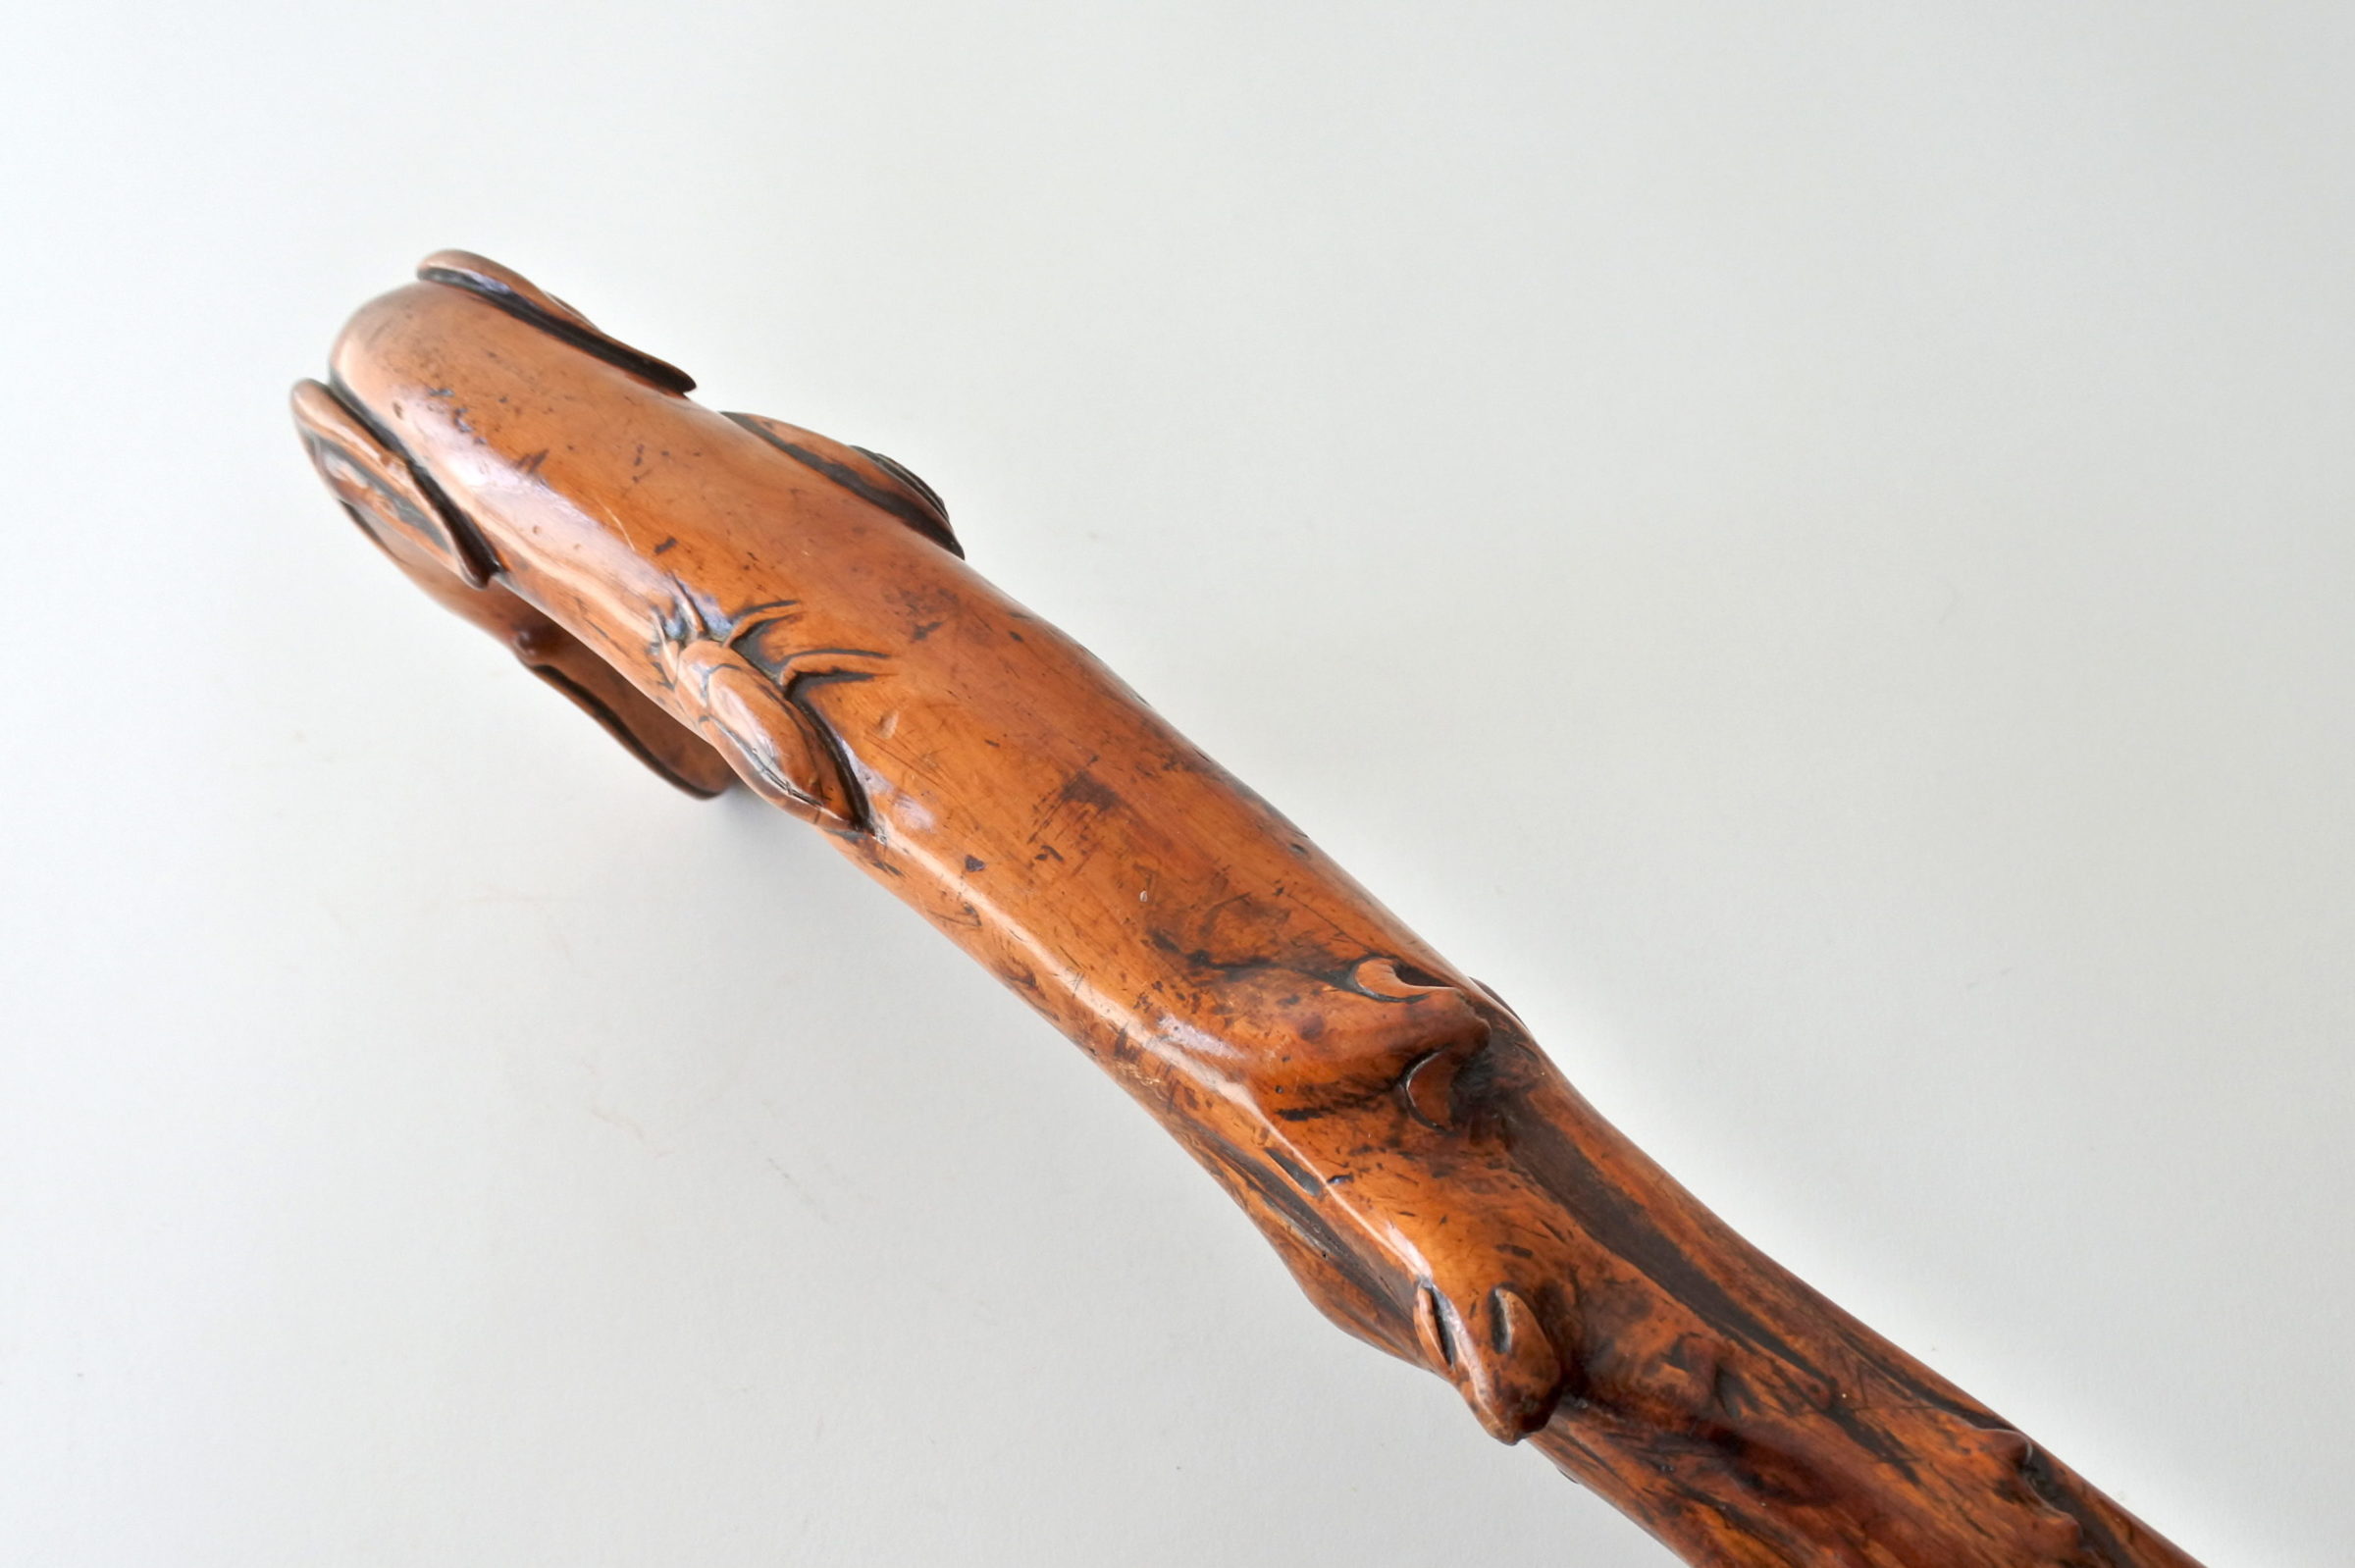 Bastone monossilo in legno scolpito con impugnatura a forma di testa di cane - 4